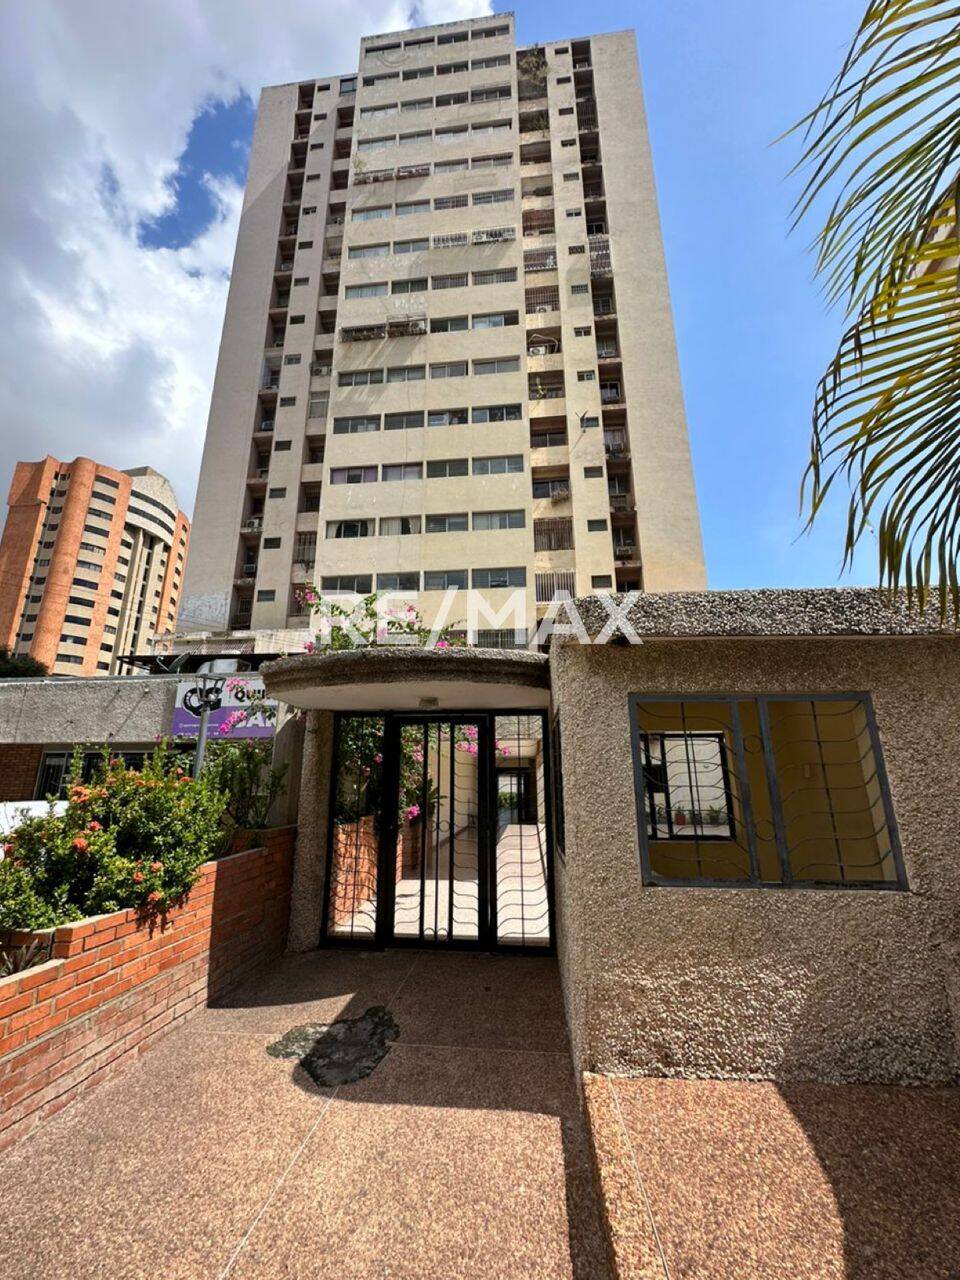 #1812 - Apartamento para Venta en Maracaibo - V